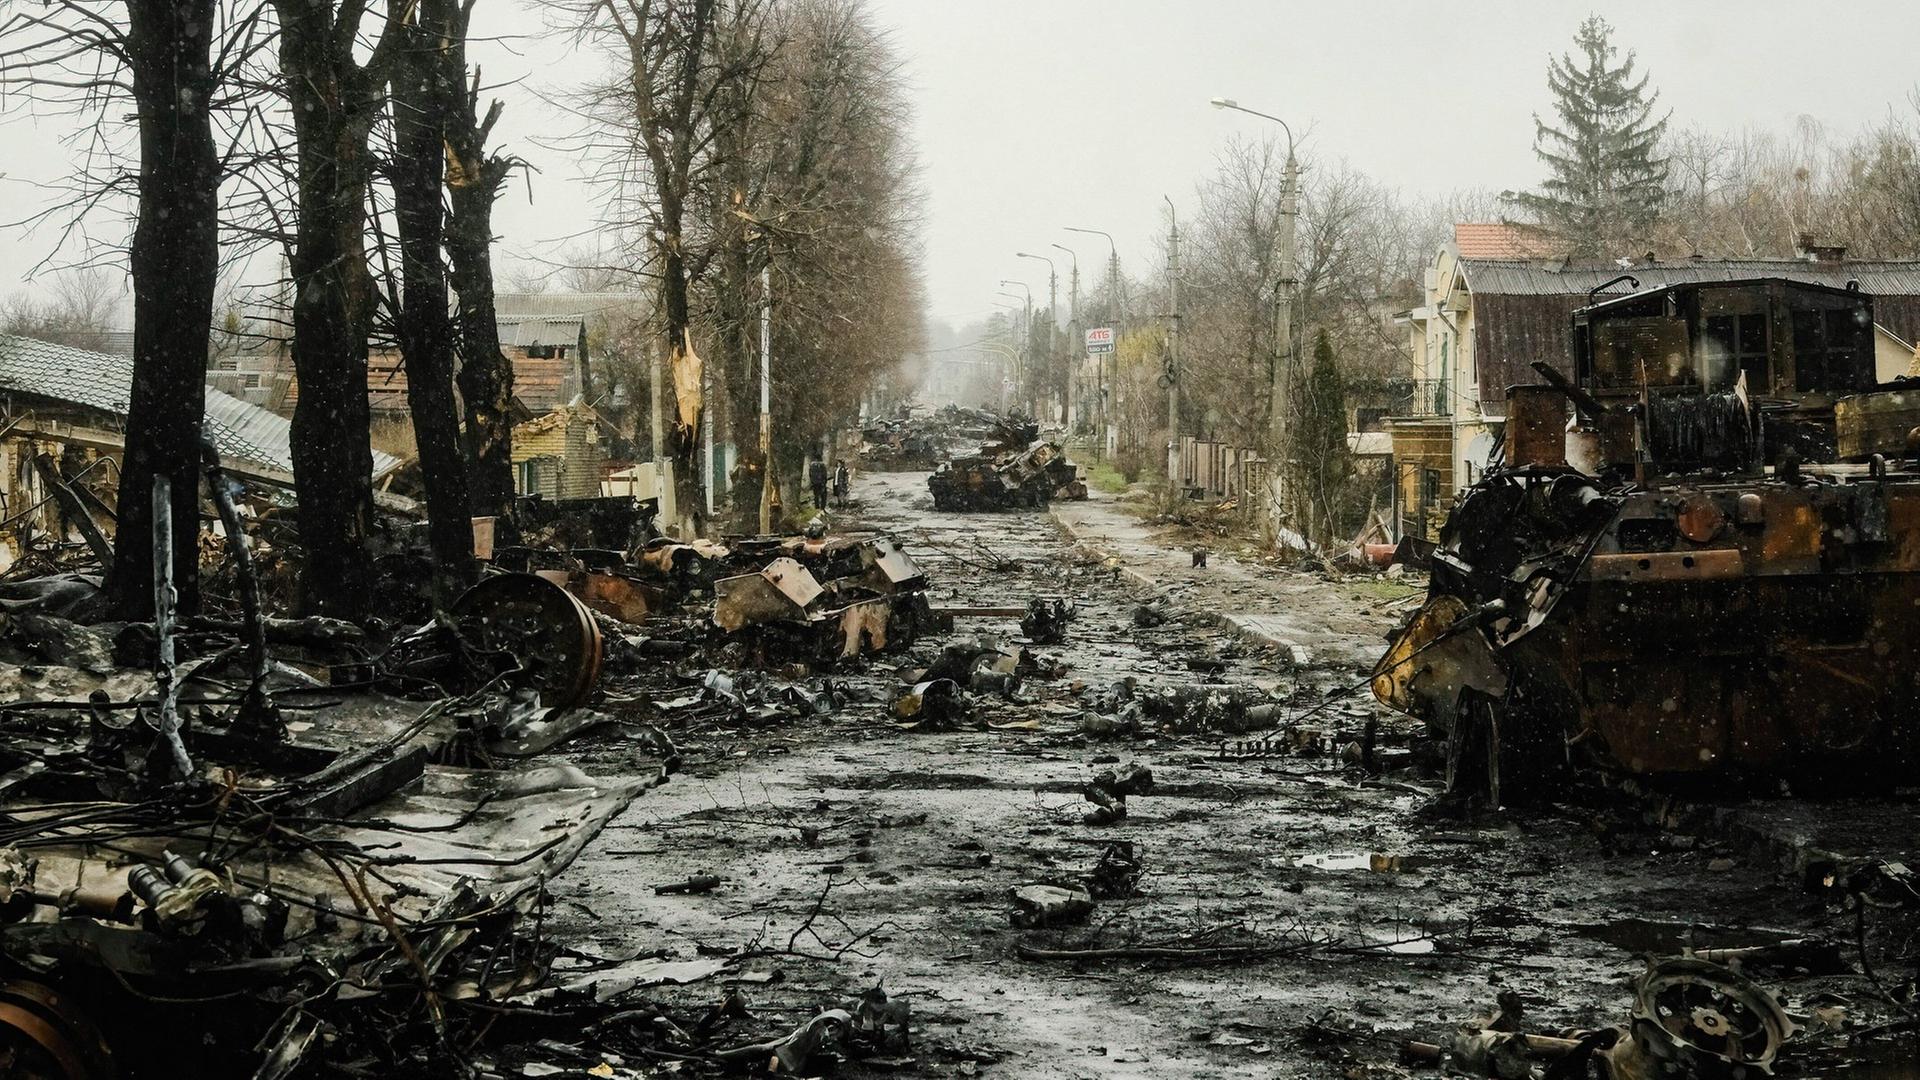 Trümmer von Kriegs-Gerät auf einer Dorf-Sraße, links 4 durch einen Brand verkohlte Baum-Stämme